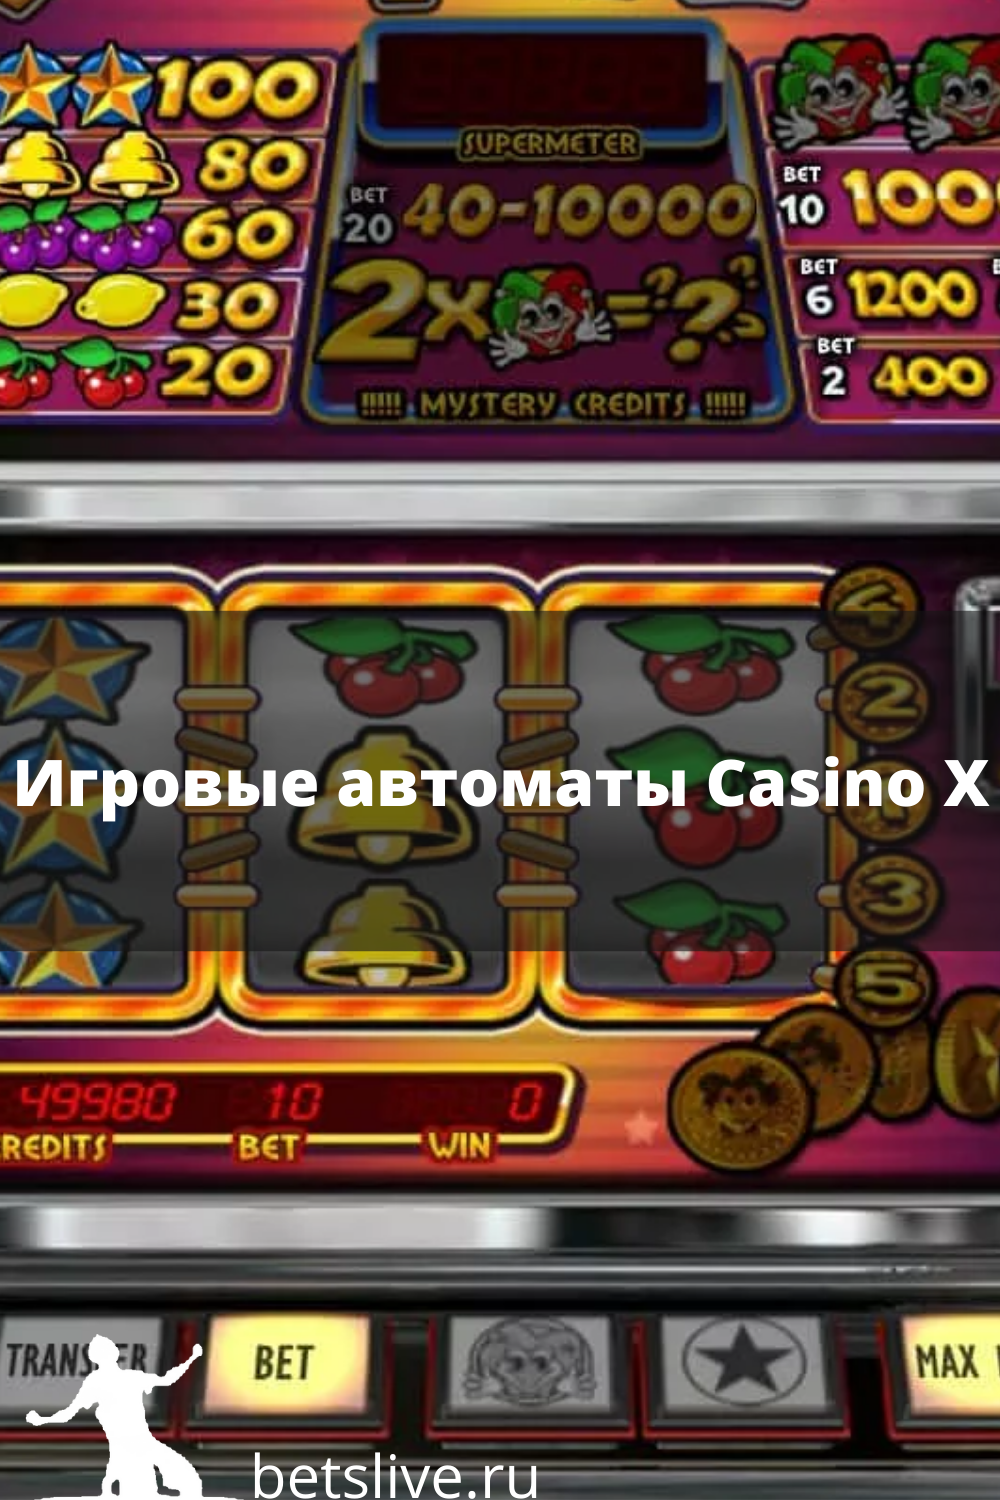 Игровой автомат казино. Игровые автоматы казино Икс. Игровые автоматы 2000 годов. Спортбет игровые автоматы.